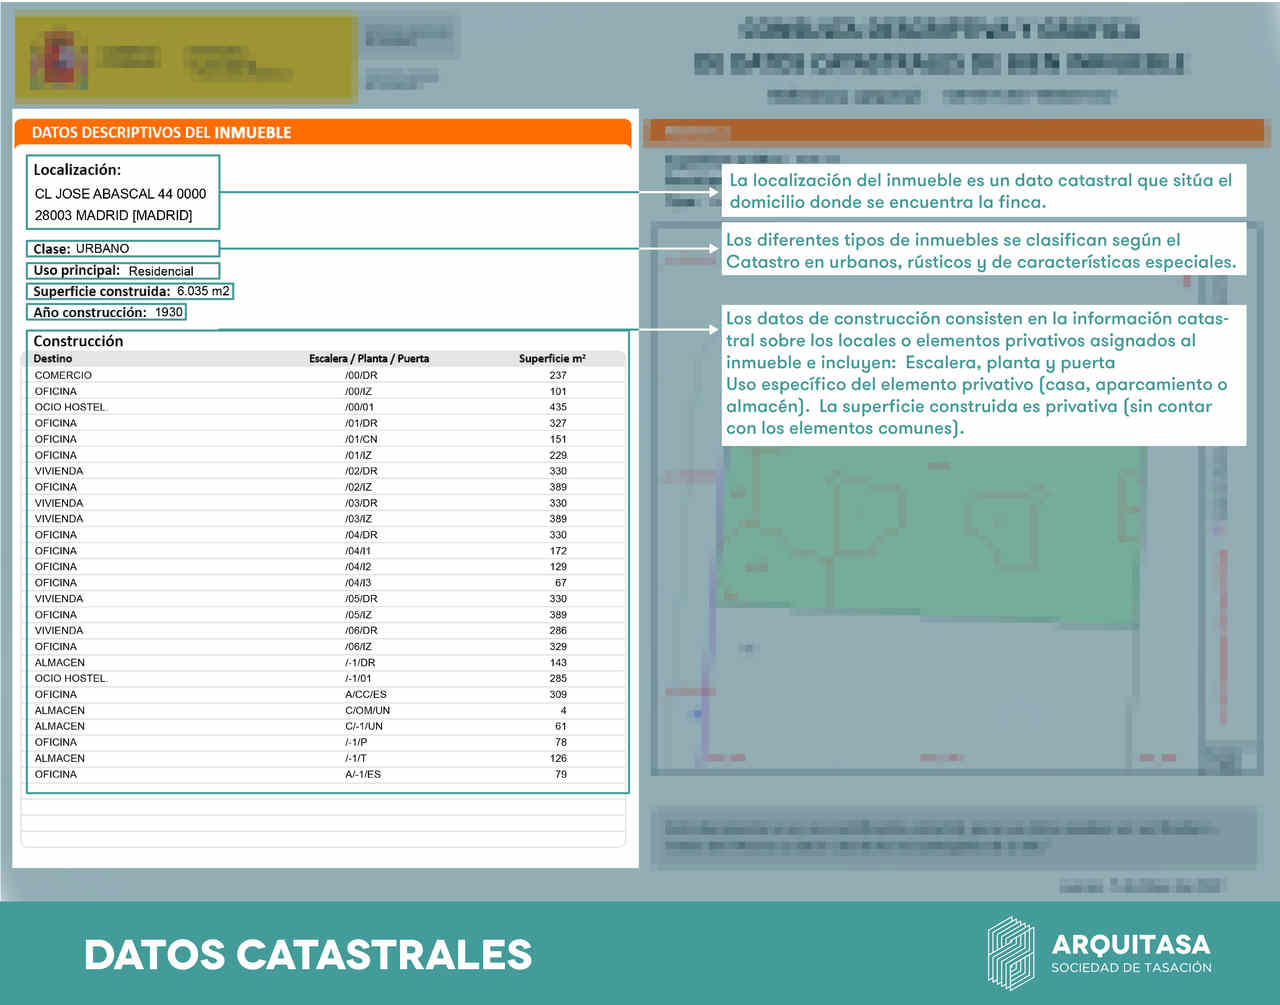 Los datos descriptivos del inmueble en el Catastro incluyen la localización, la clase, el uso principal o año de construcción